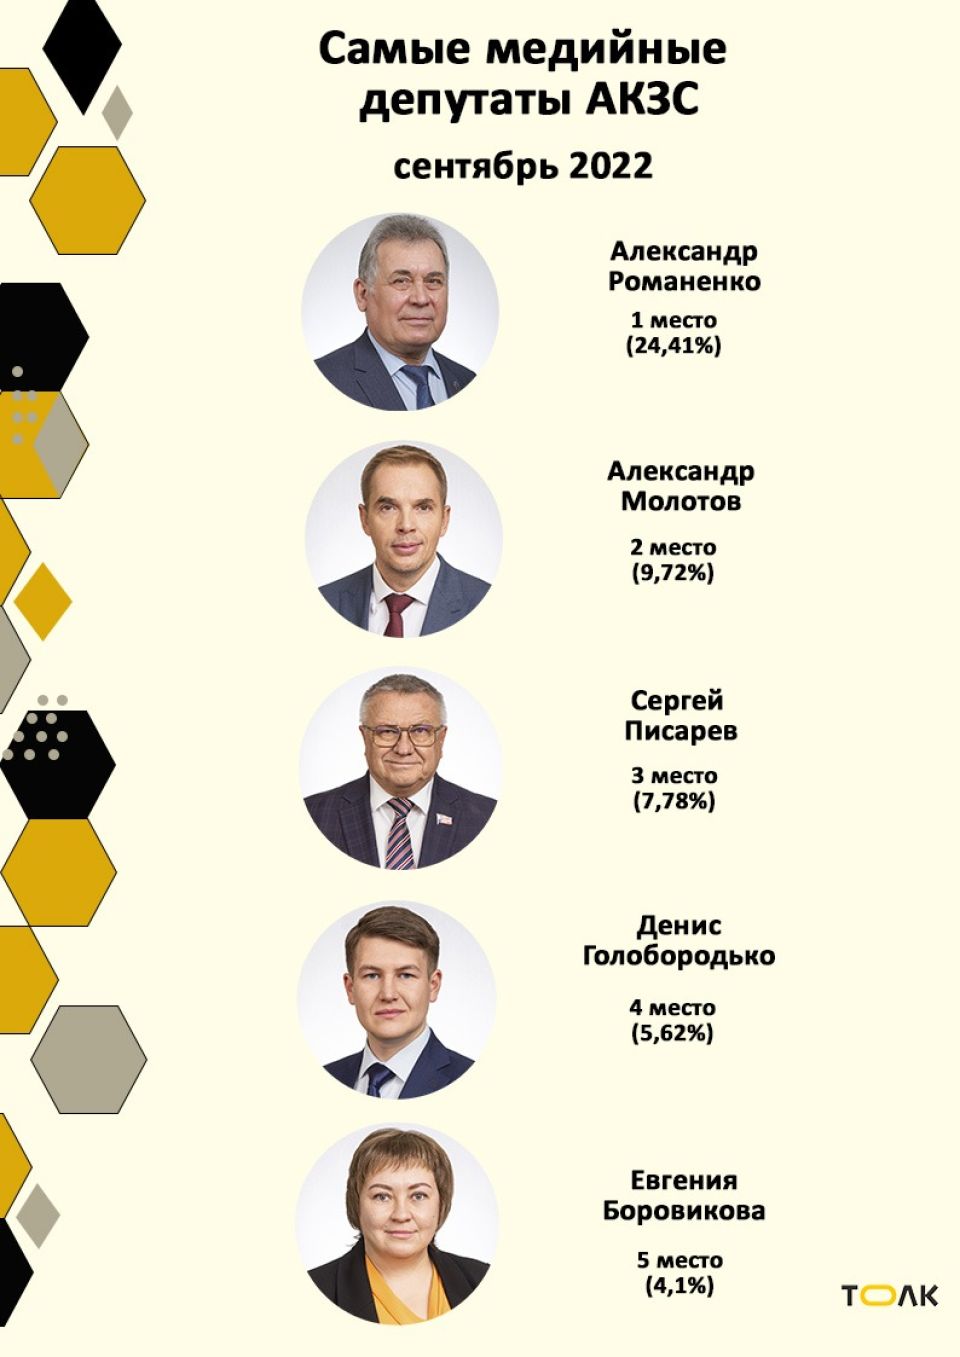 Рейтинг медийности депутатов АКЗС в сентябре 2022 года